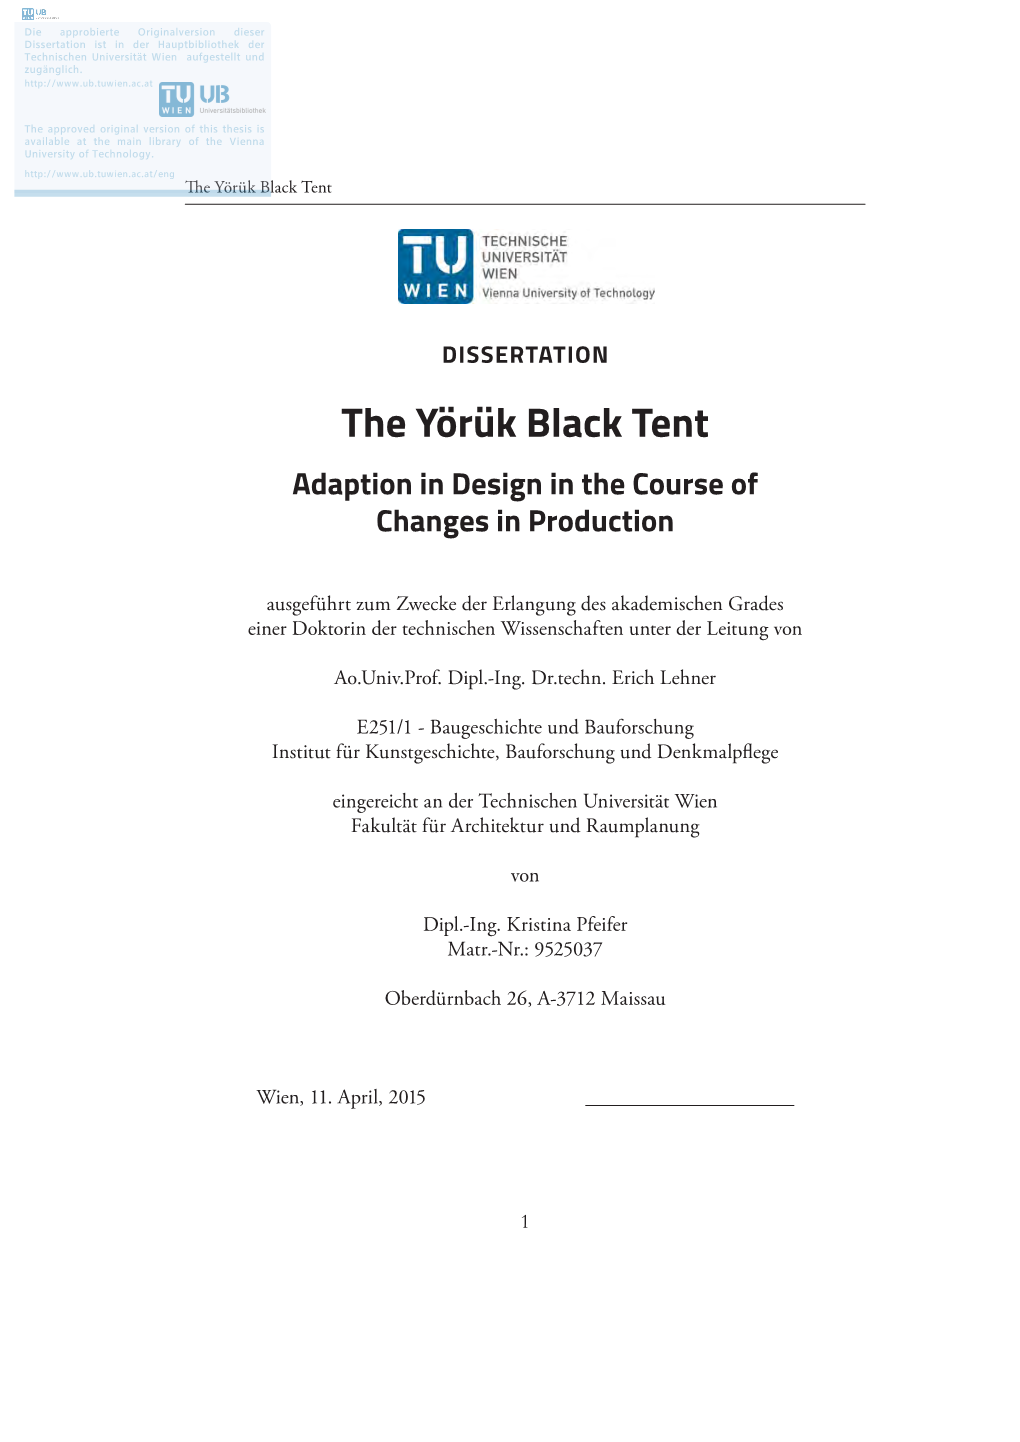 The Yörük Black Tent